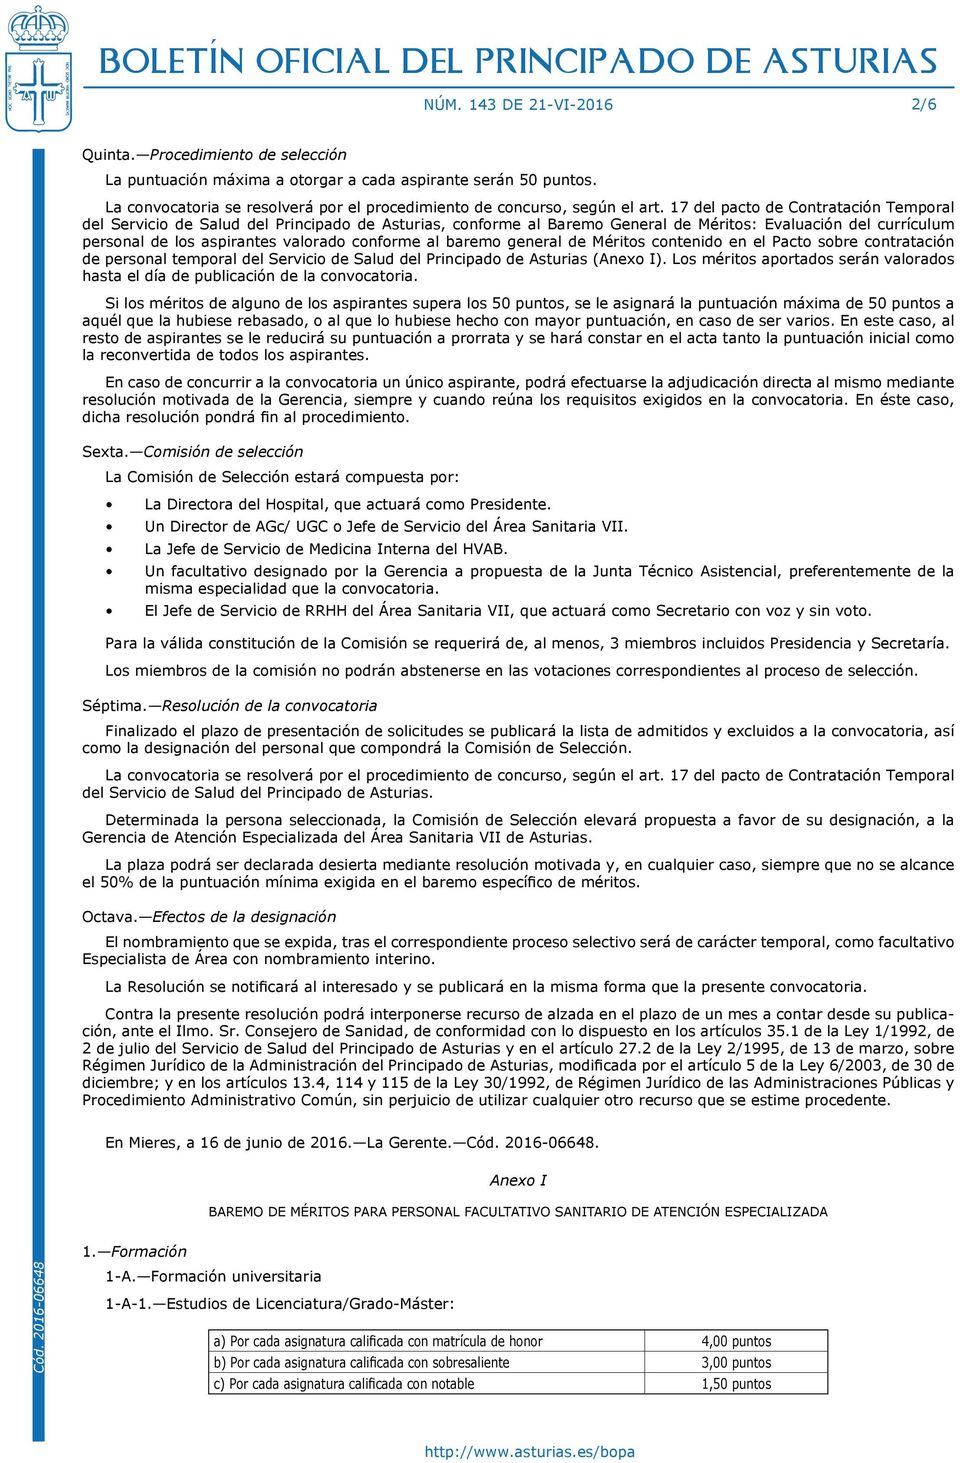 17 del pacto de Contratación Temporal del Servicio de Salud del Principado de Asturias, conforme al Baremo General de Méritos: Evaluación del currículum personal de los aspirantes valorado conforme